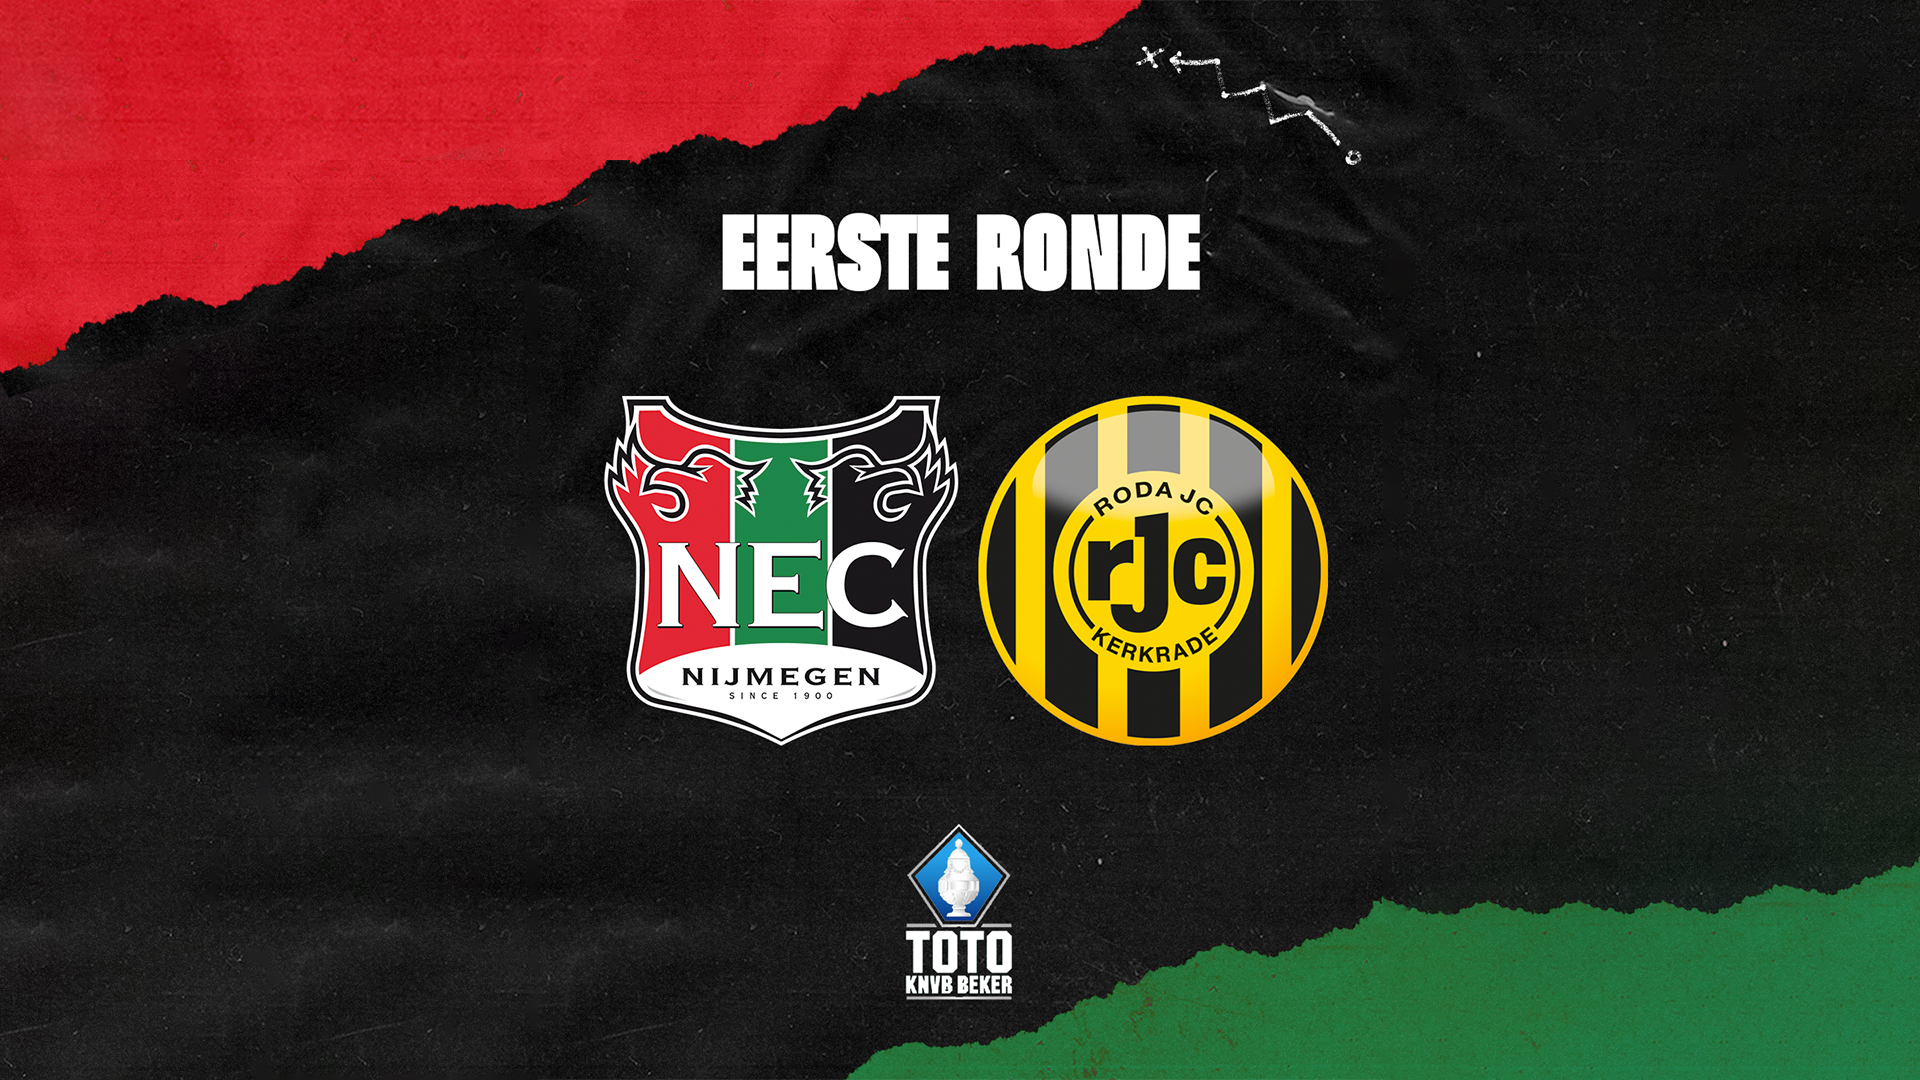 KNVB Beker News: NEC vs Roda JC Kerkrade Confirmed Line-ups